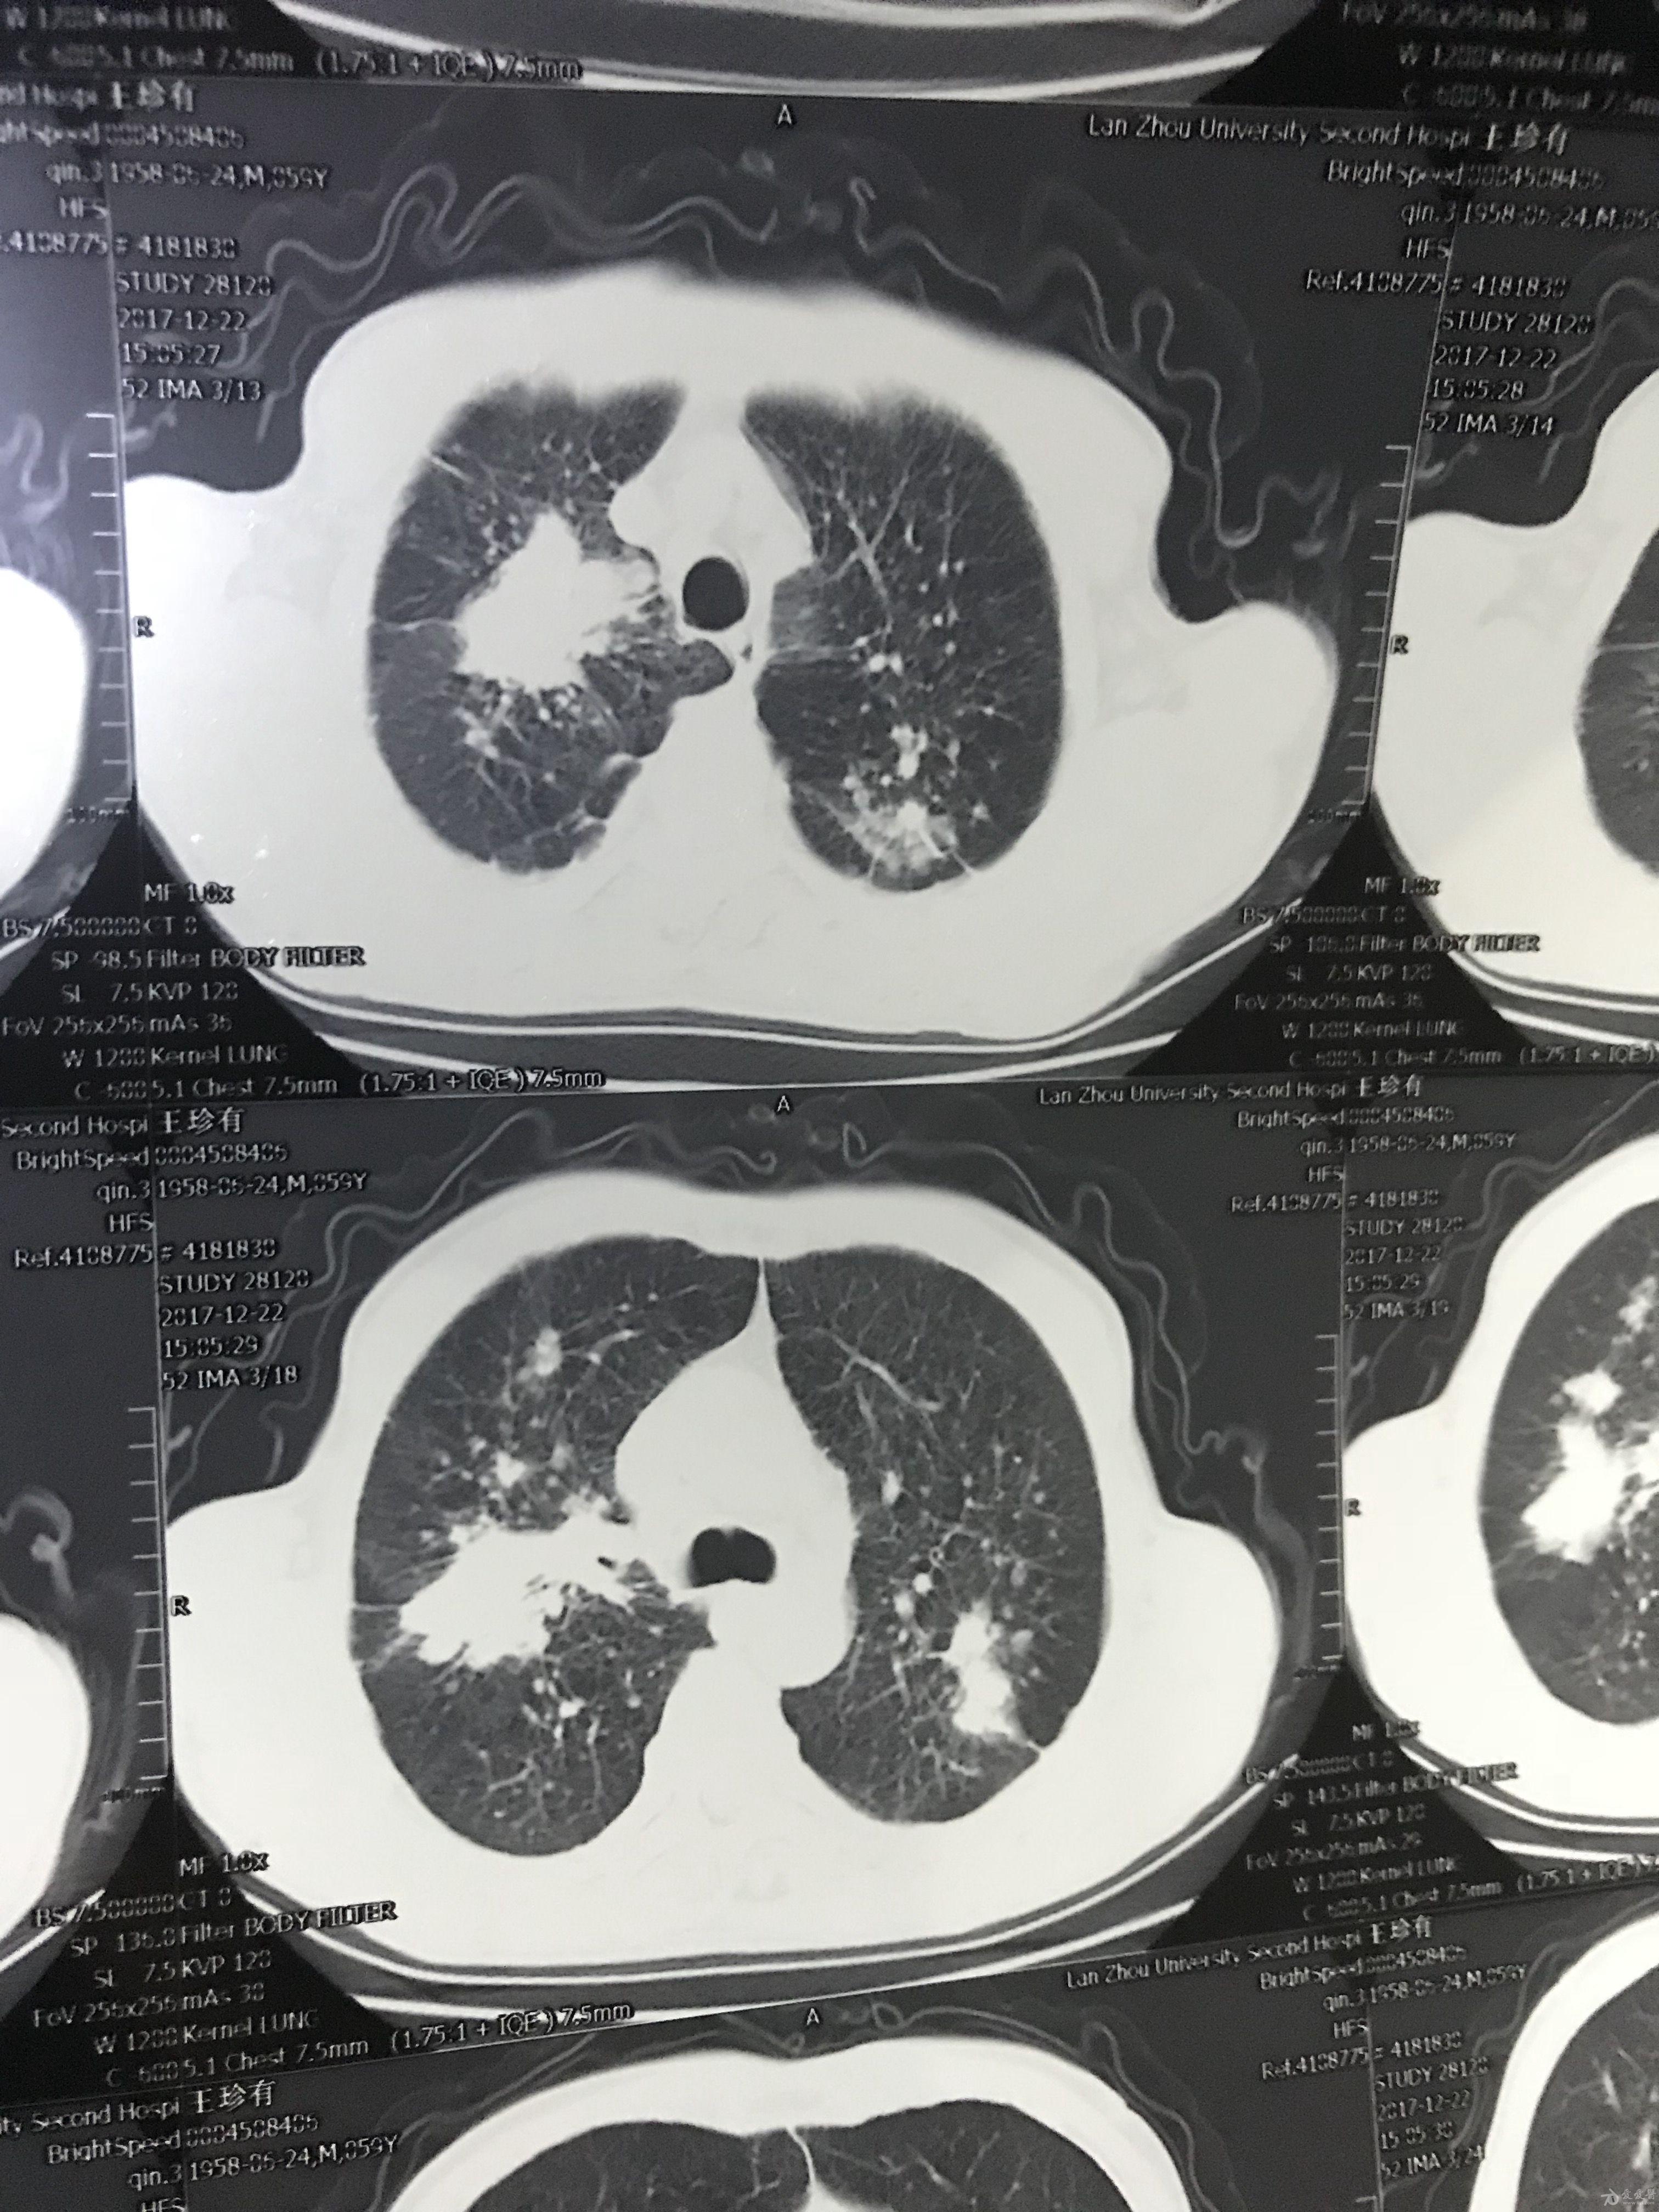 肺癌增强ct图片